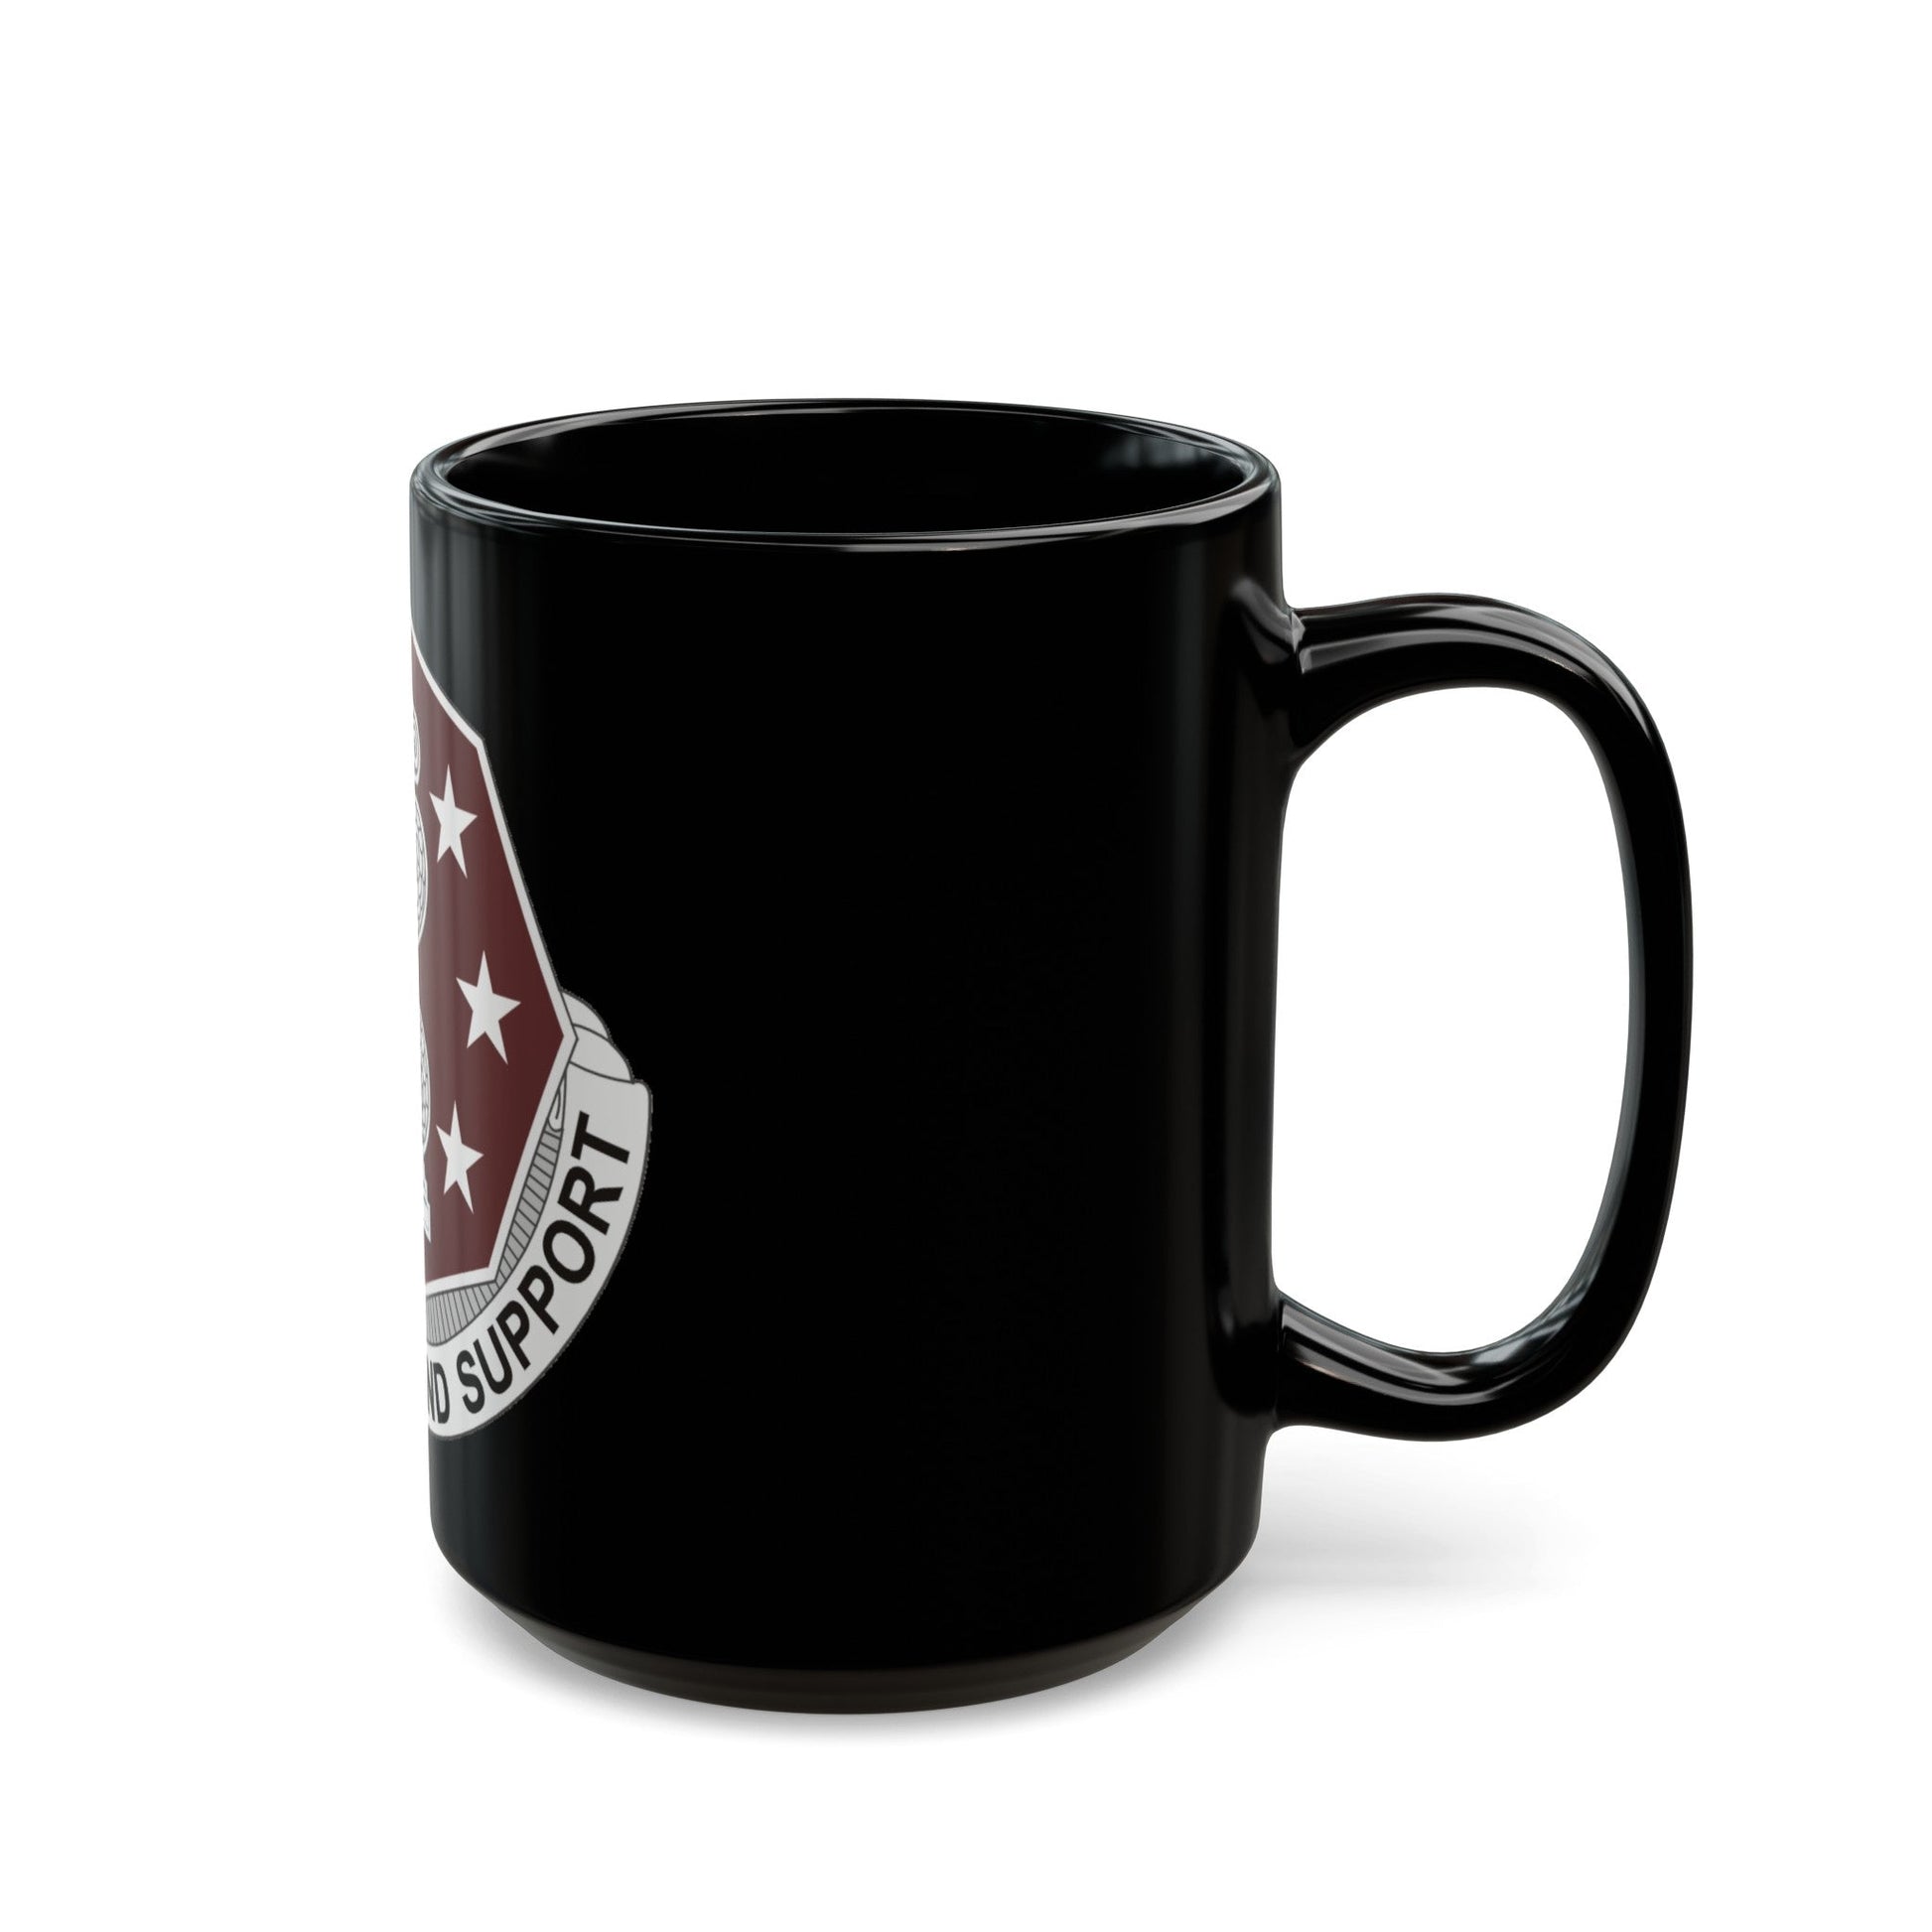 168 Medical Battalion (U.S. Army) Black Coffee Mug-The Sticker Space